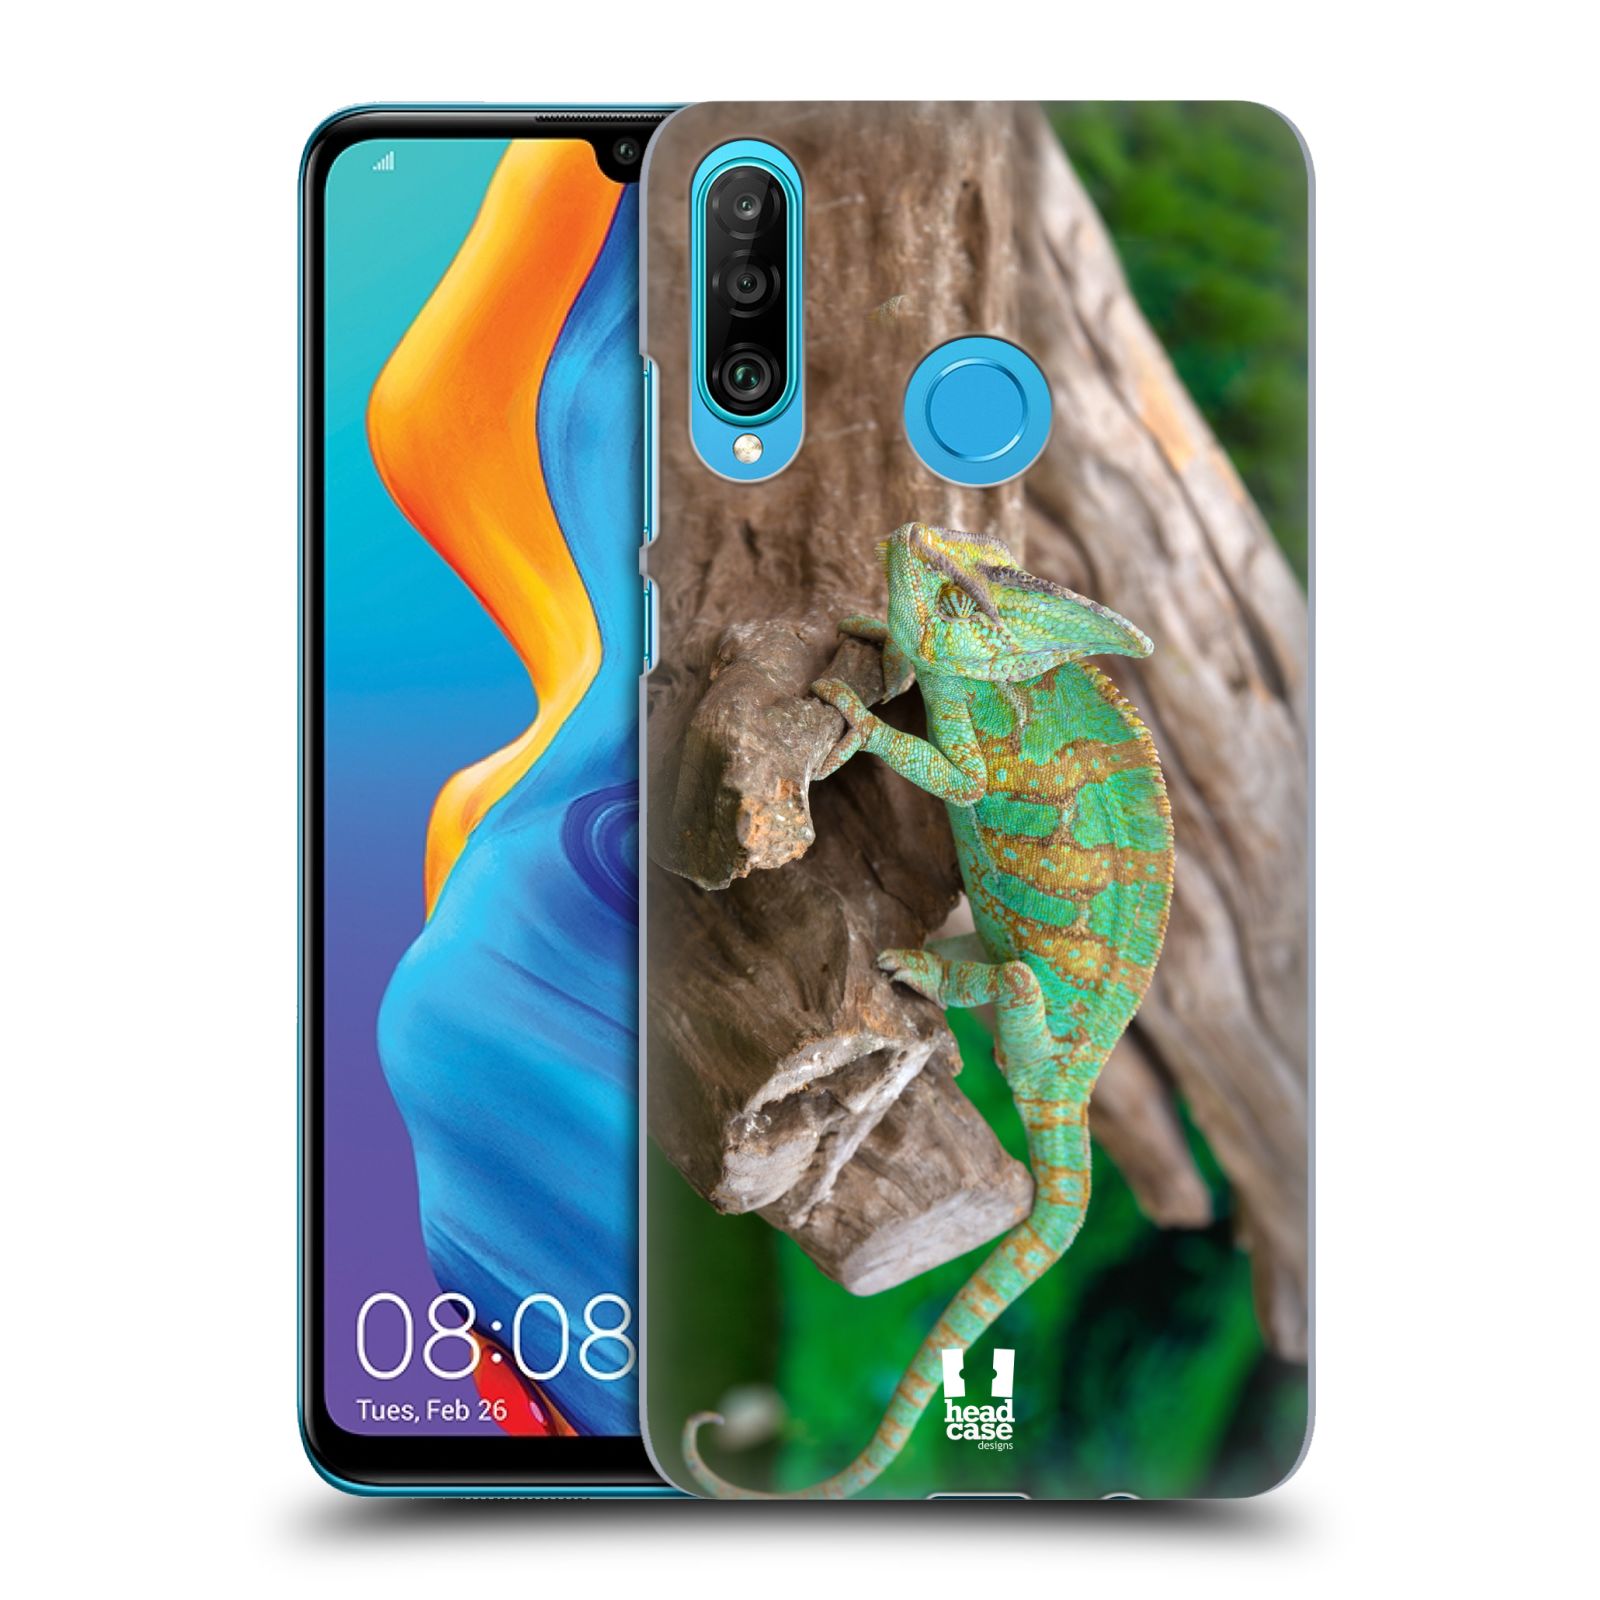 Pouzdro na mobil Huawei P30 LITE - HEAD CASE - vzor slavná zvířata foto chameleon